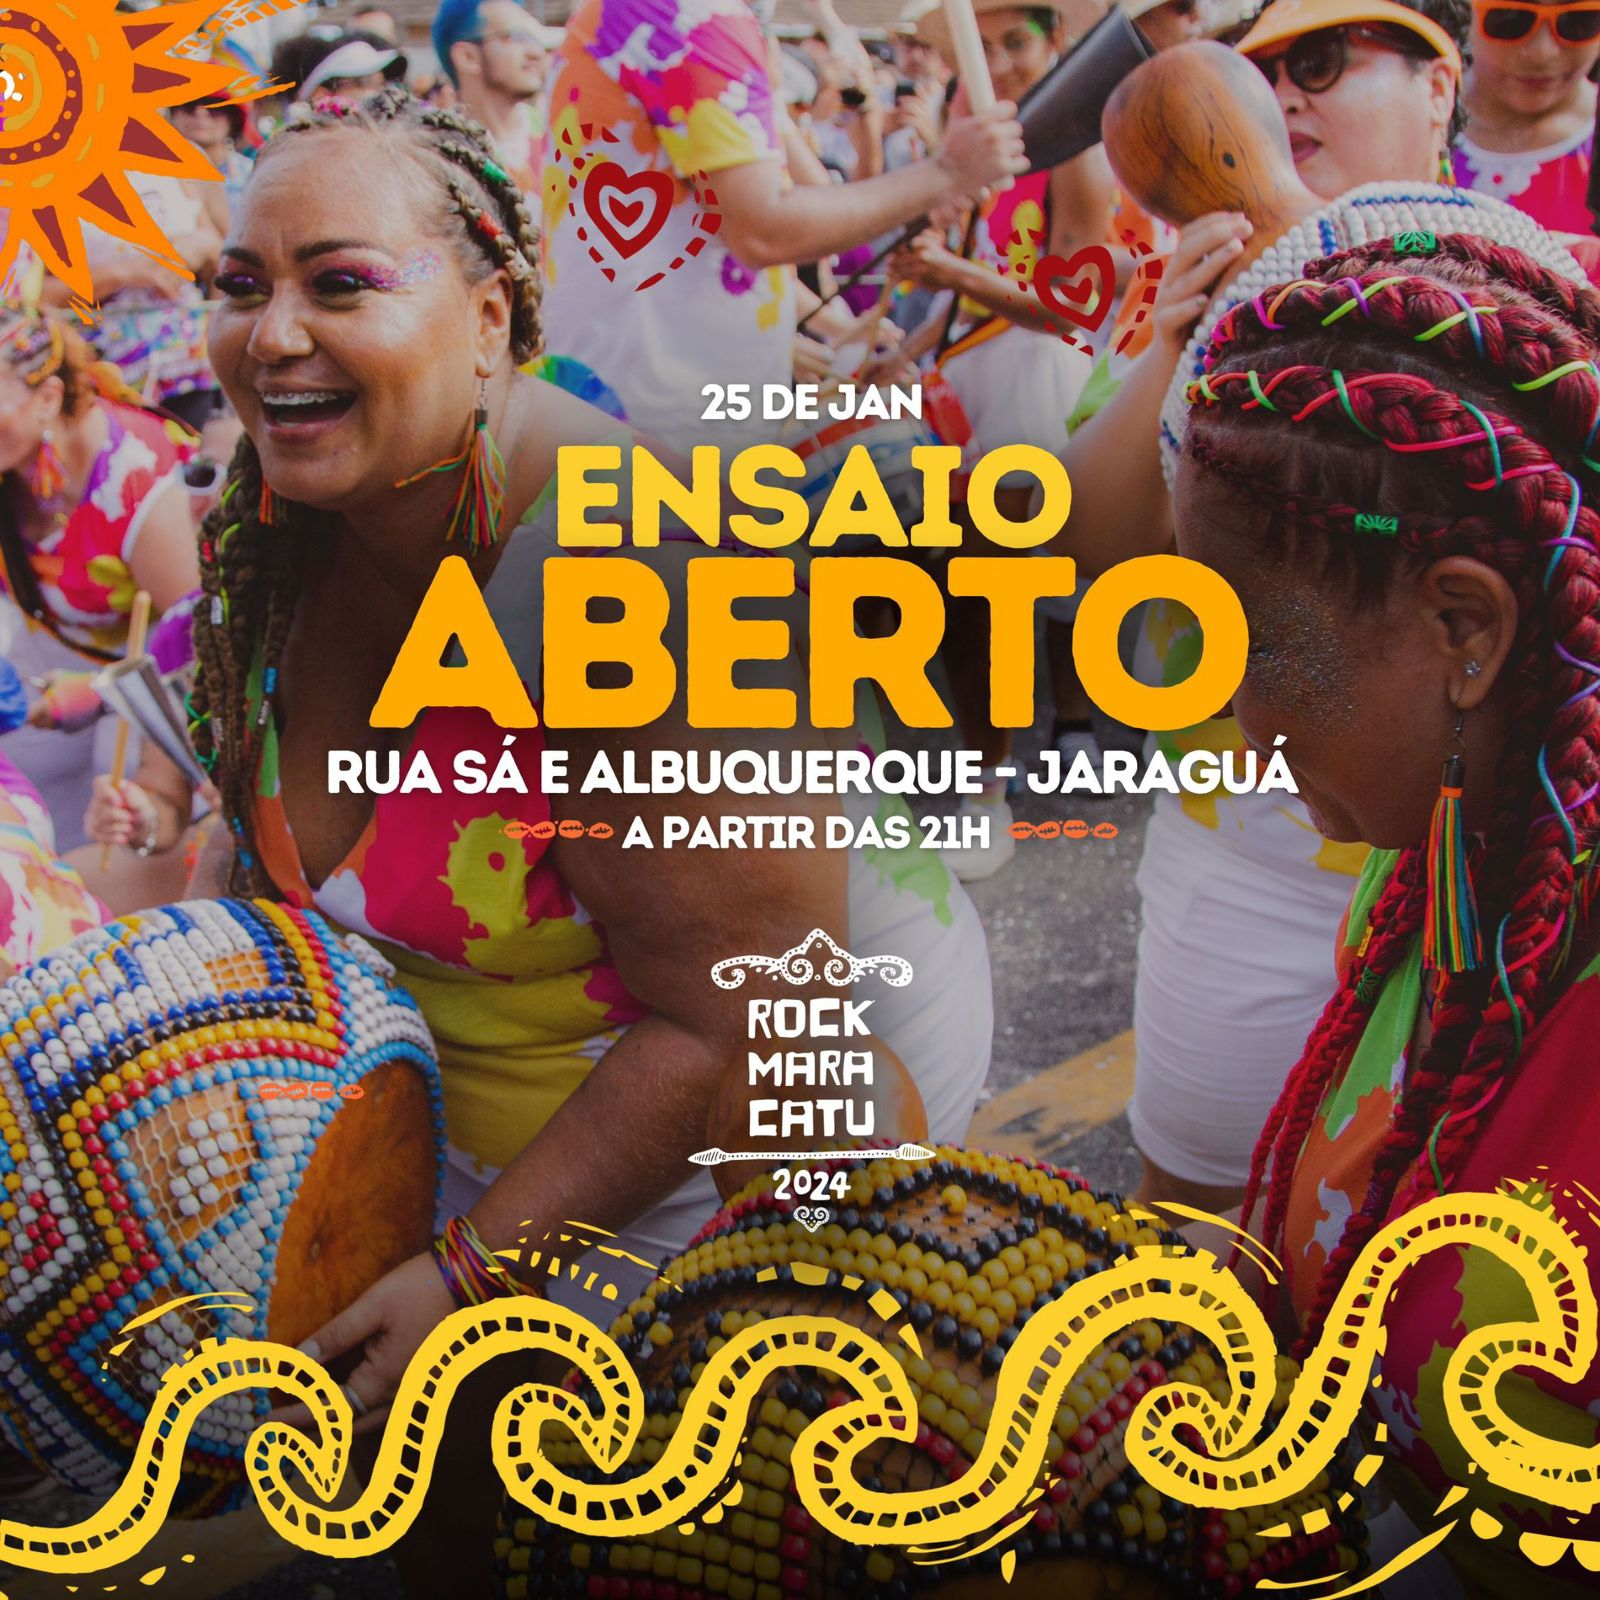 Coletivo Rock Maracatu promove ensaio aberto em preparação para as prévias carnavalescas